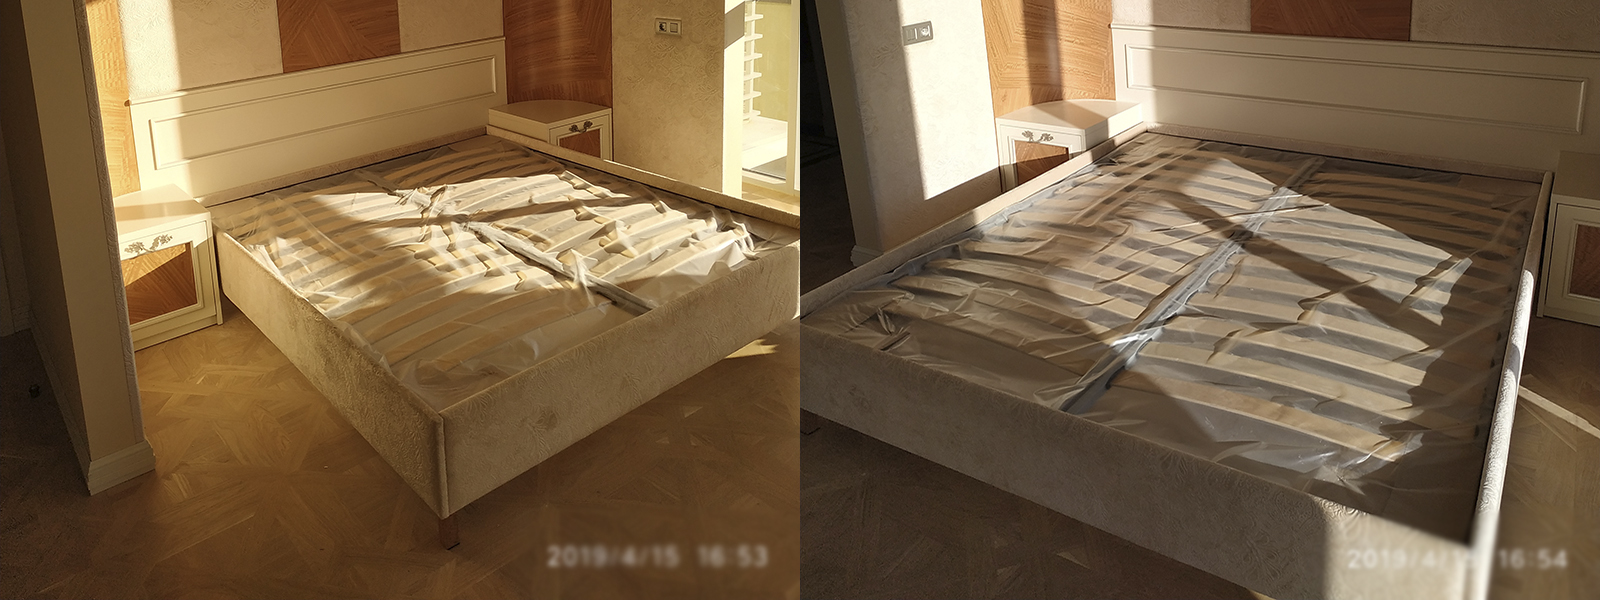 Обтяжка кровати в Казани недорого на дому и в мастерской, высокое качество тканей